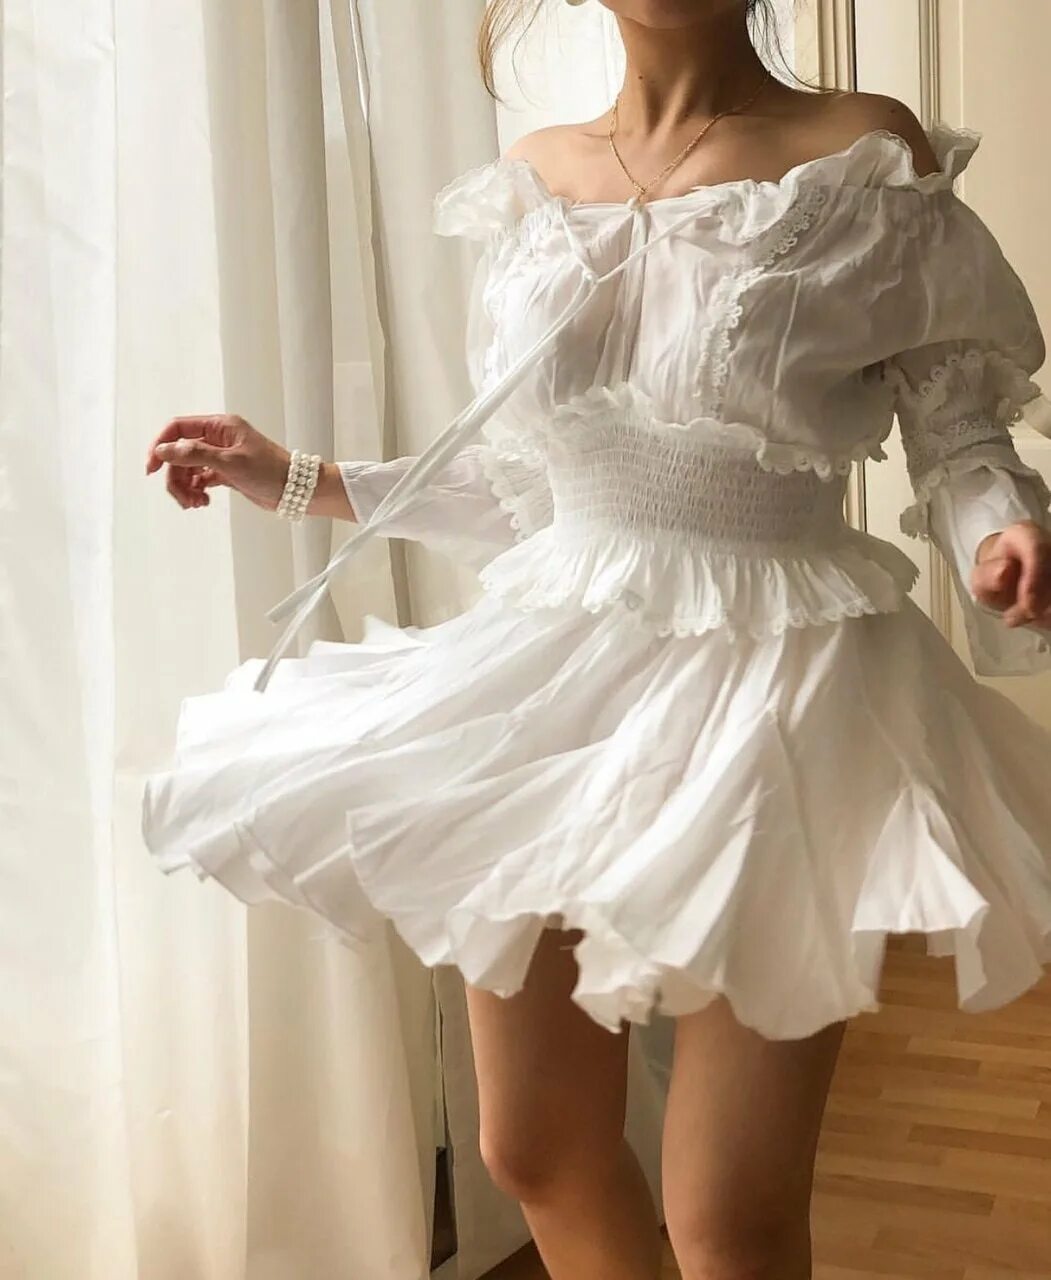 Воздушное платье. Белое платье Эстетика. Красивые воздушные платья. Винтажное платье легкое. Кокет стиль